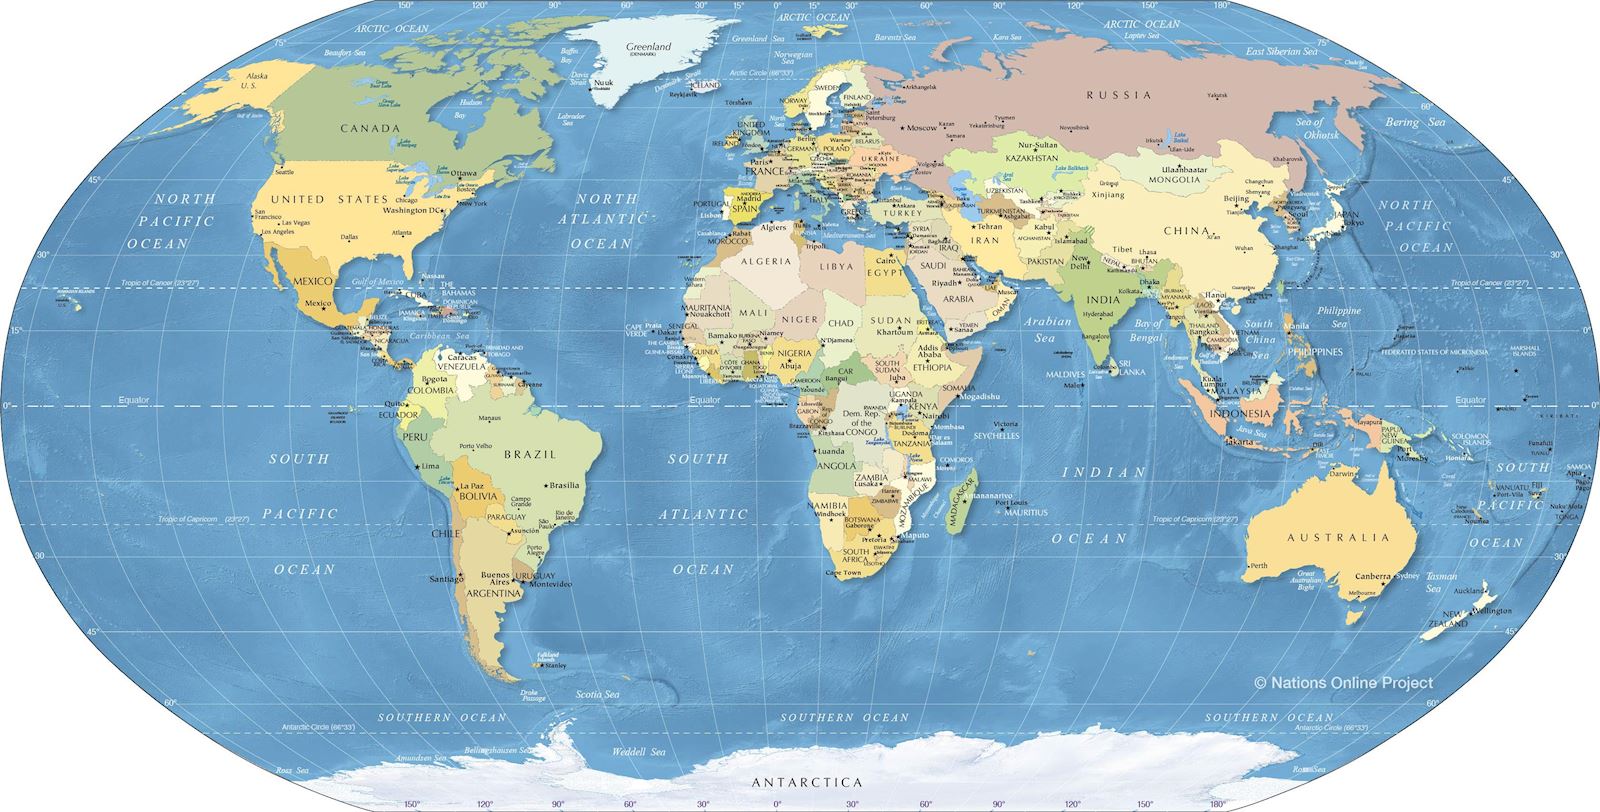 Bản đồ thế giới khổ lớn phóng to: Tận hưởng một trải nghiệm thú vị khi khám phá thế giới với bản đồ thế giới khổ lớn phóng to. Những chi tiết nhỏ sẽ được hiển thị rõ ràng và bạn sẽ có thể thấy được các thành phố lớn và thị trấn nhỏ nhắn trên khắp thế giới. Đắm mình trong cảm giác trả lời được những câu hỏi liên quan đến các khu vực đất đai và văn hóa trên toàn thế giới.